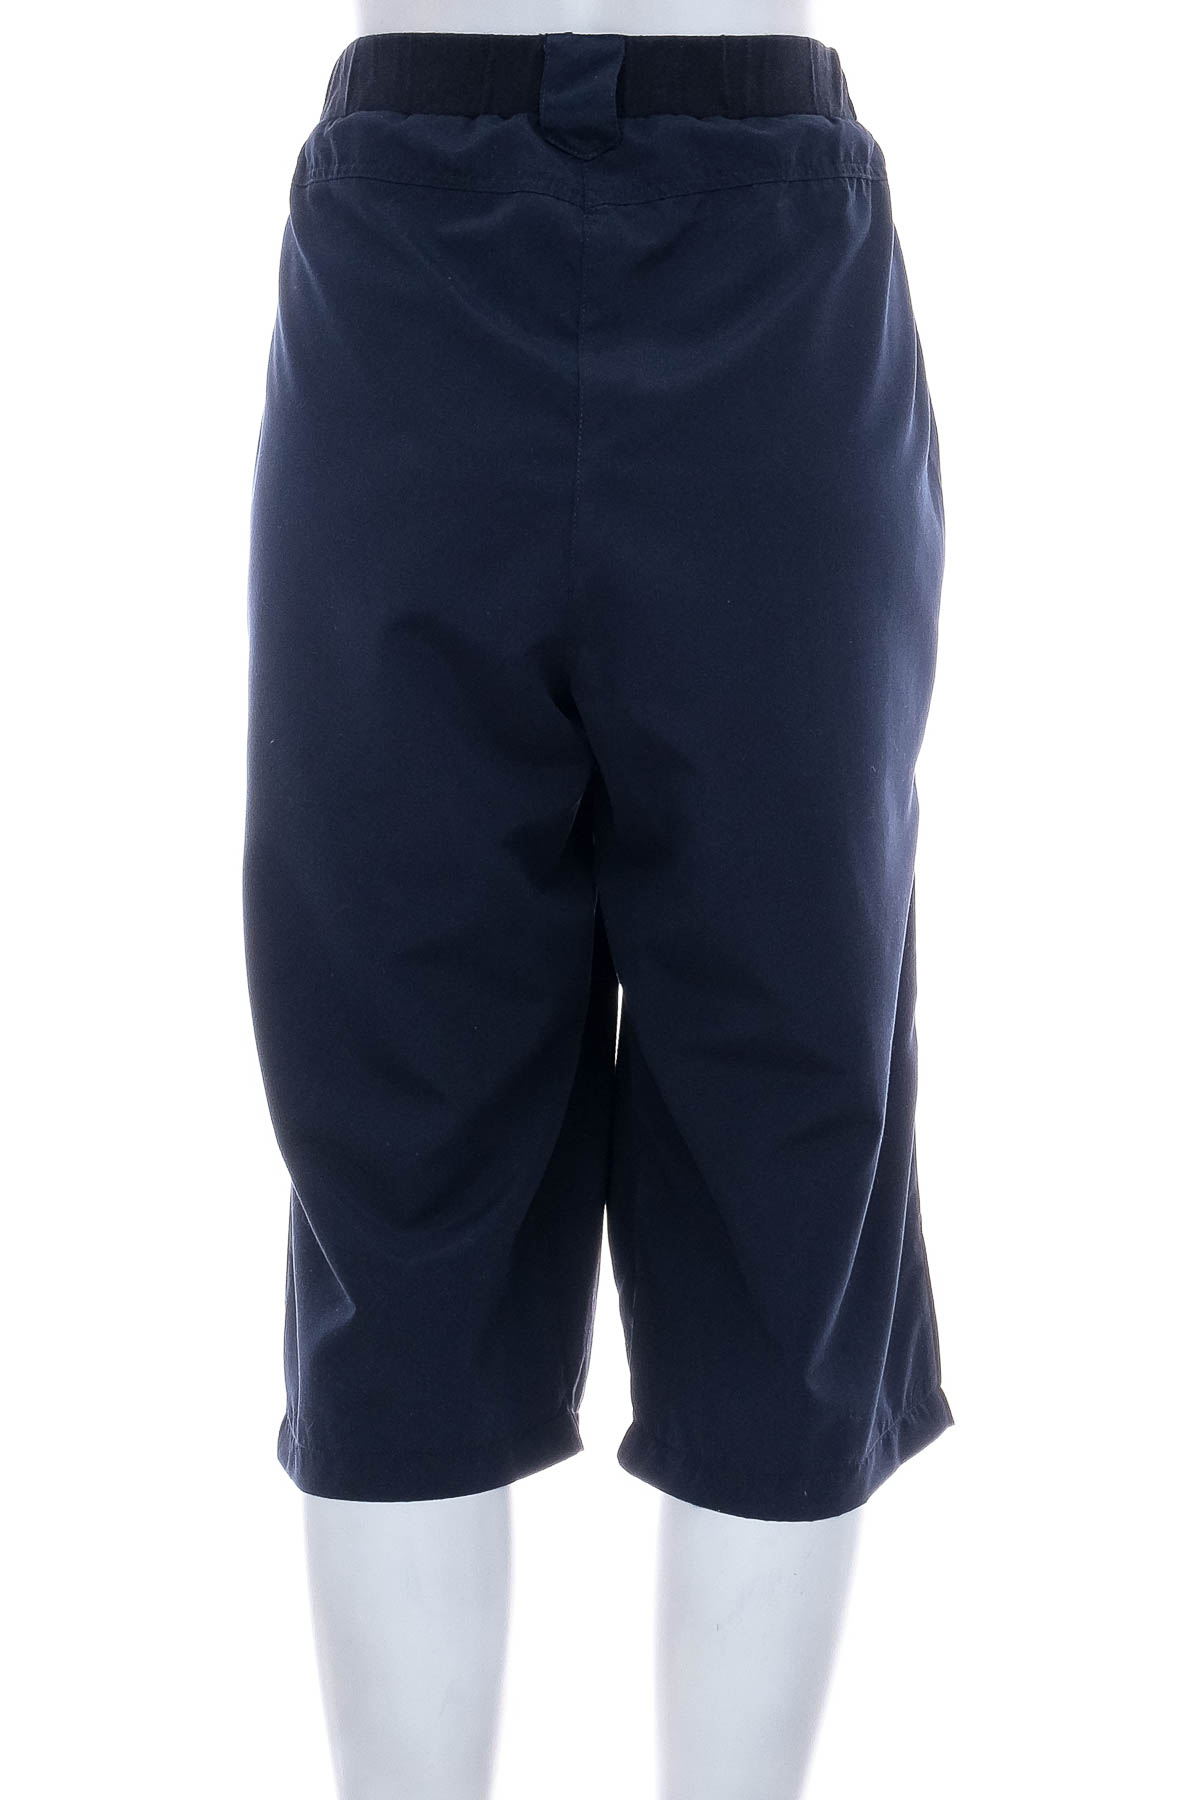 Krótkie spodnie damskie - Collection L - 1